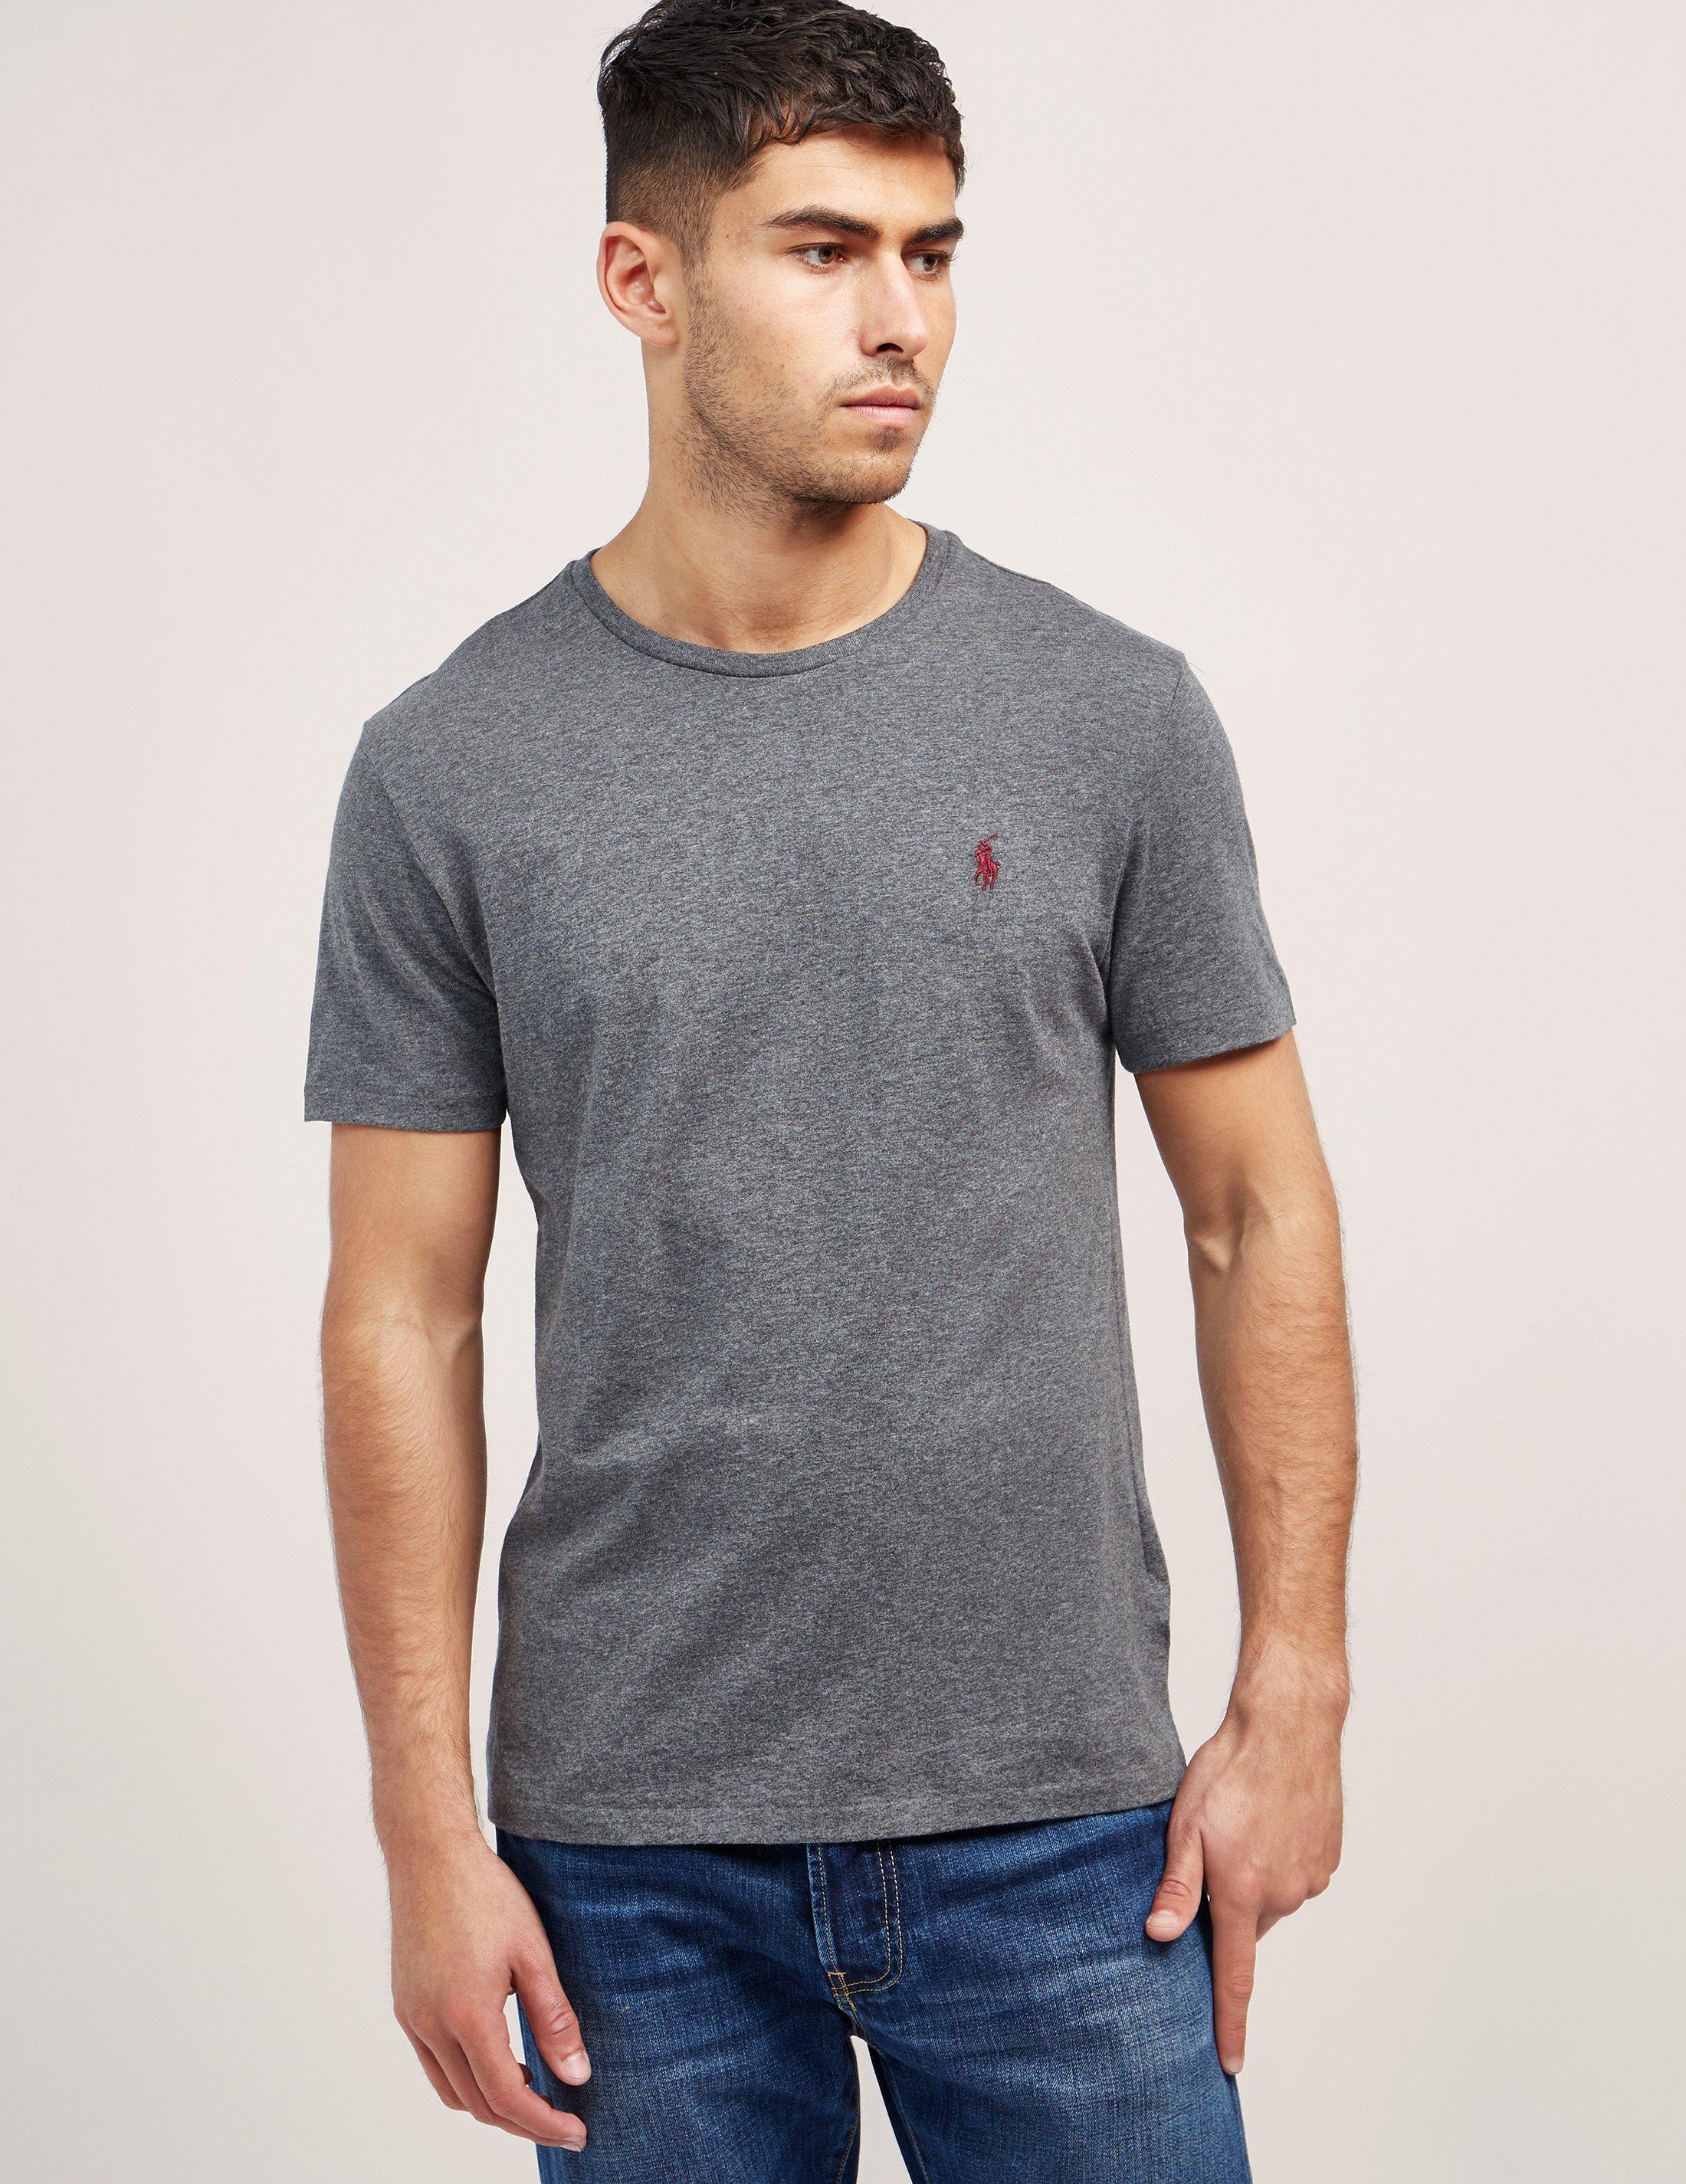 Lyst - Polo Ralph Lauren Basic Short Sleeve T-shirt in Gray for Men